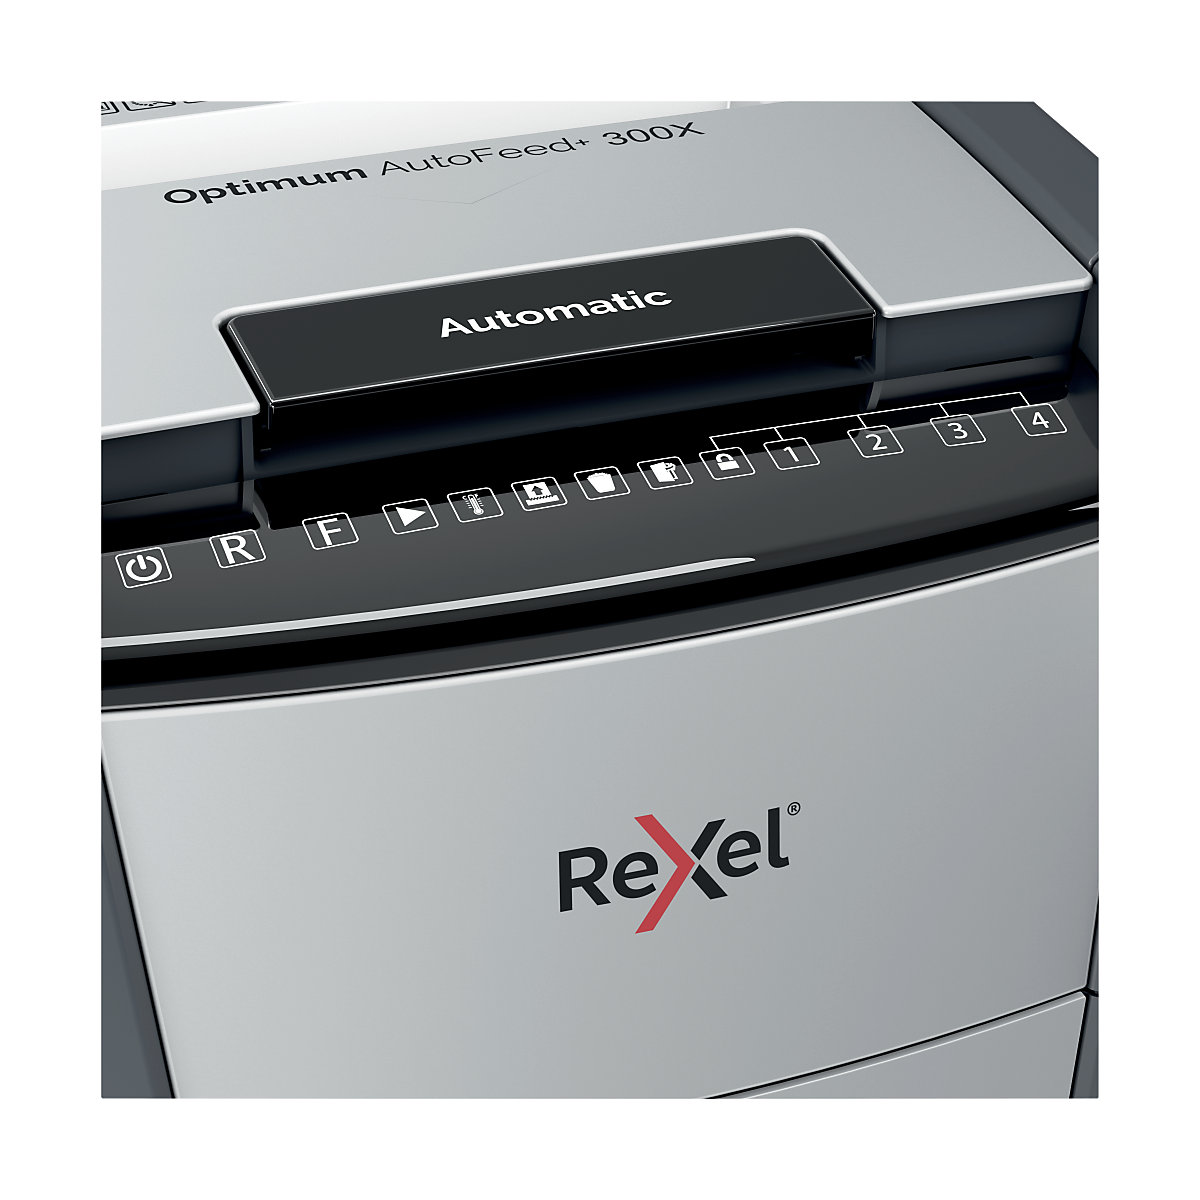 Uništavač dokumenata Optimum AutoFeed+ 300X – Rexel (Prikaz proizvoda 12)-11